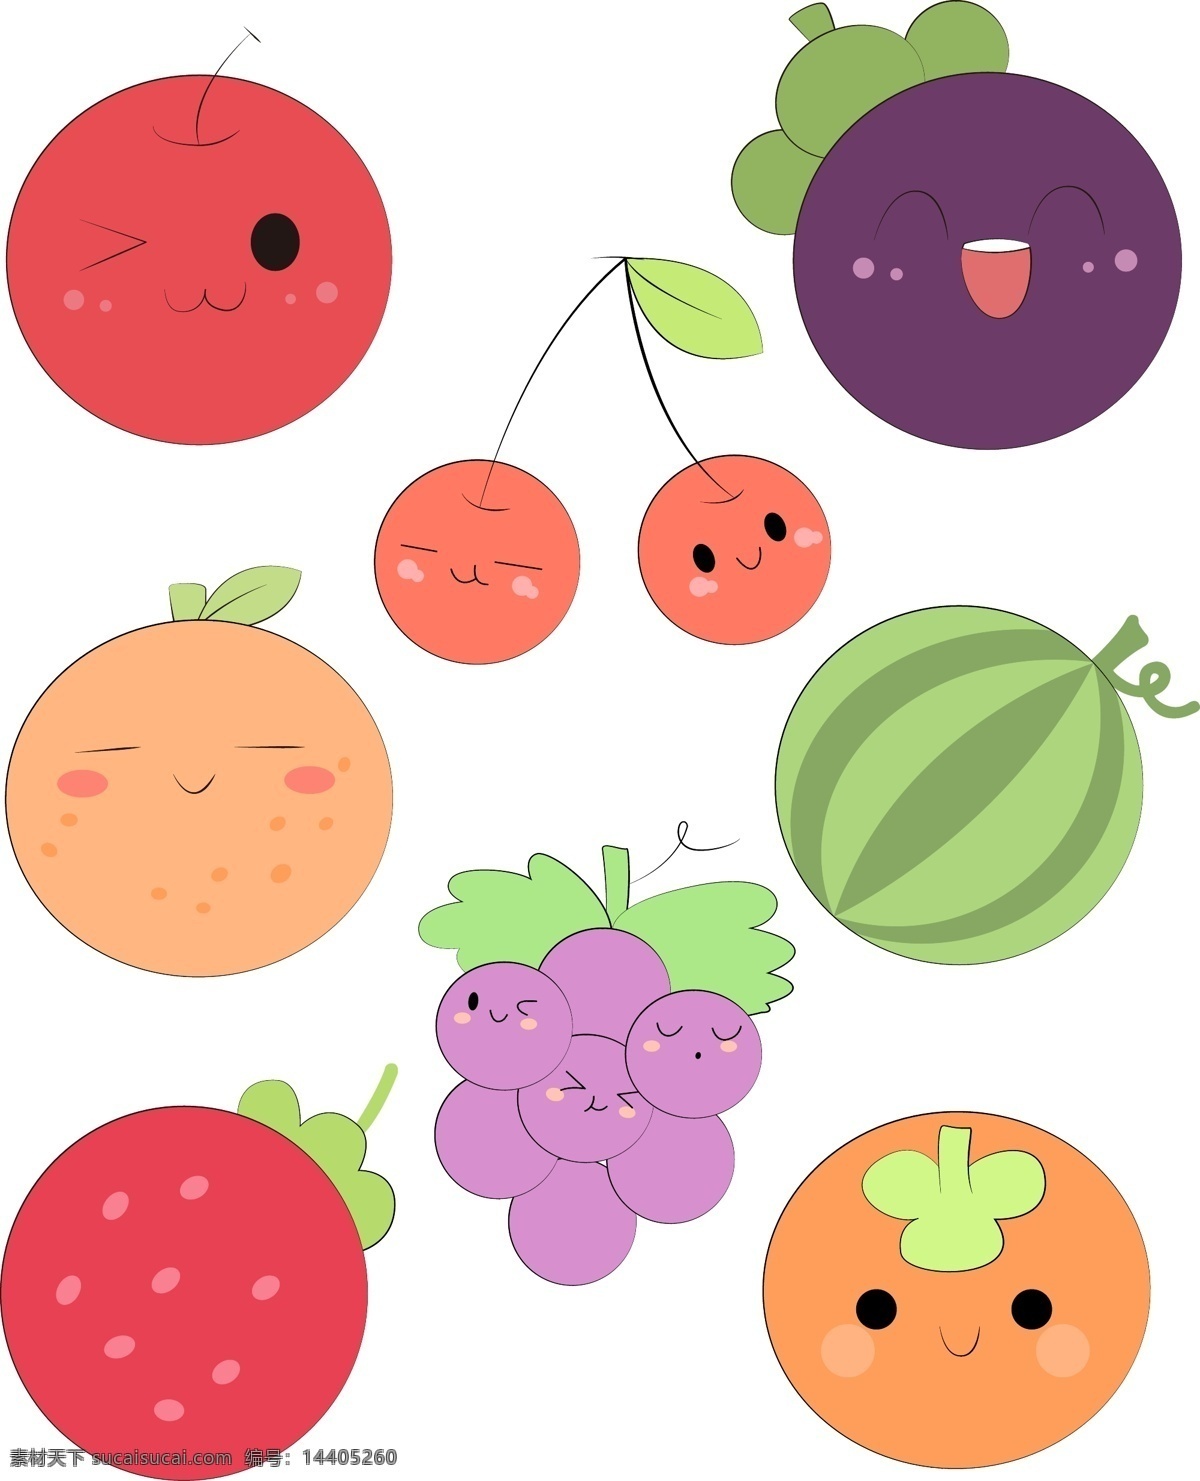 可爱 圆形 造型 水果 简 笔画 苹果 山竹 橘子 橙子 草莓 葡萄 西瓜 樱桃 简约 圆形造型 手绘 简笔画 彩色